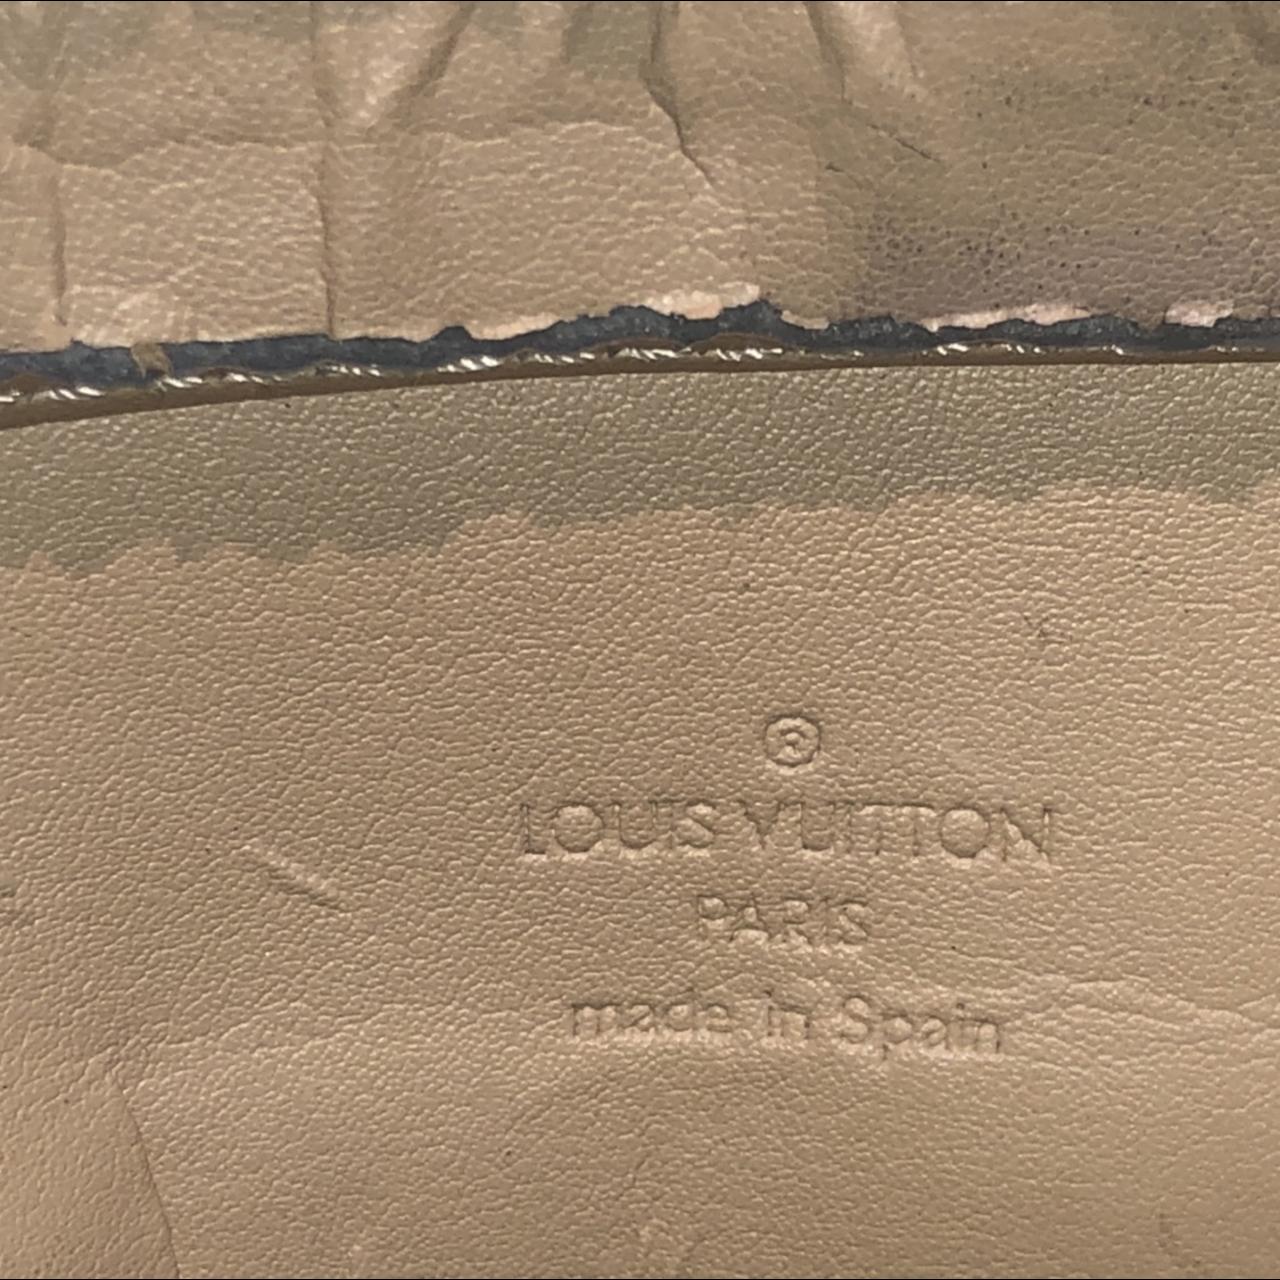 Louis Vuitton Houston Bag #louisvuitton #authentic - Depop